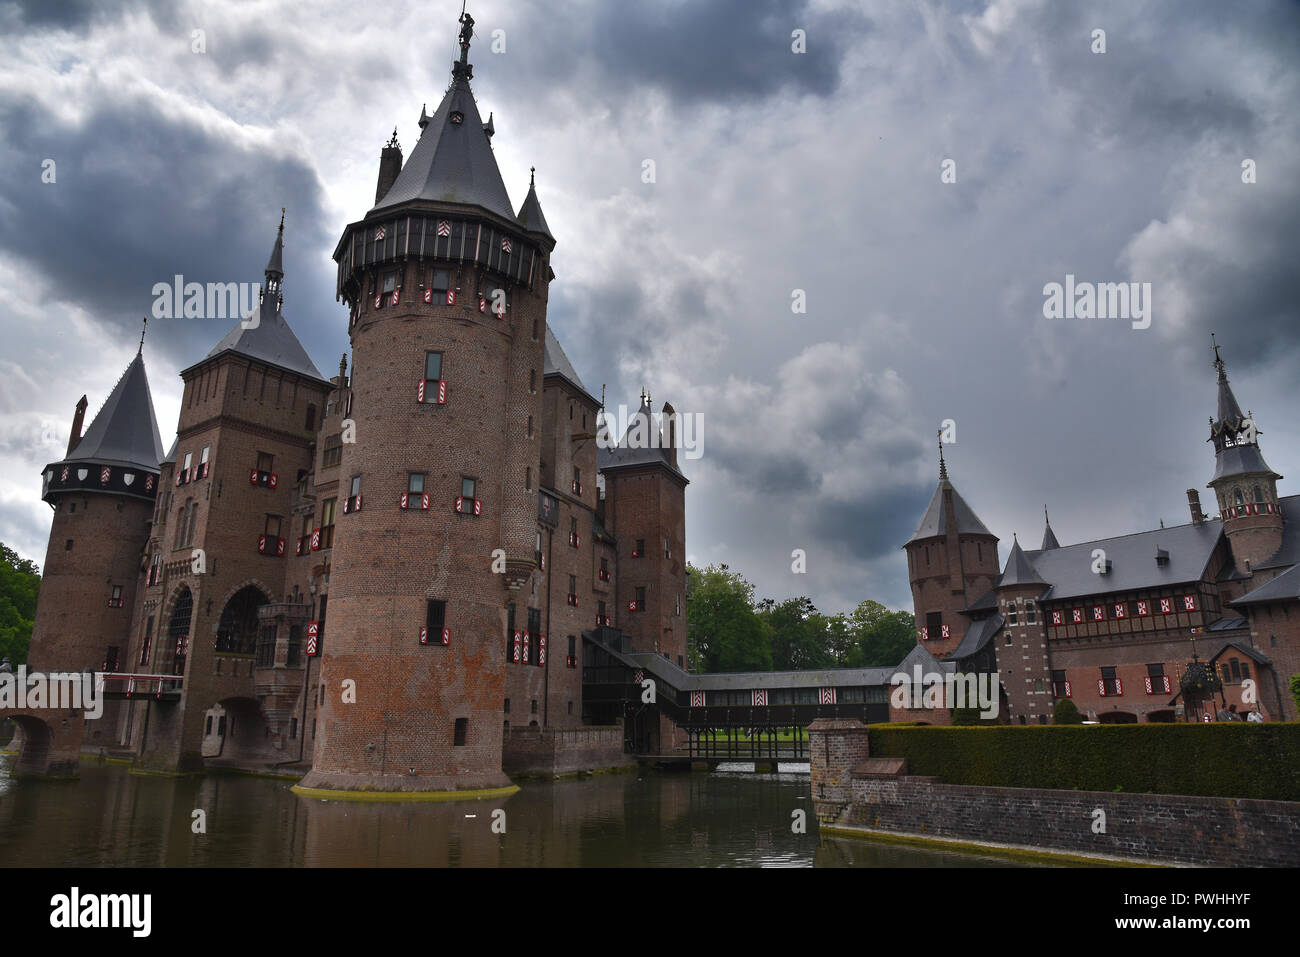 De Haar, the biggest castle in Netherlands Stock Photo